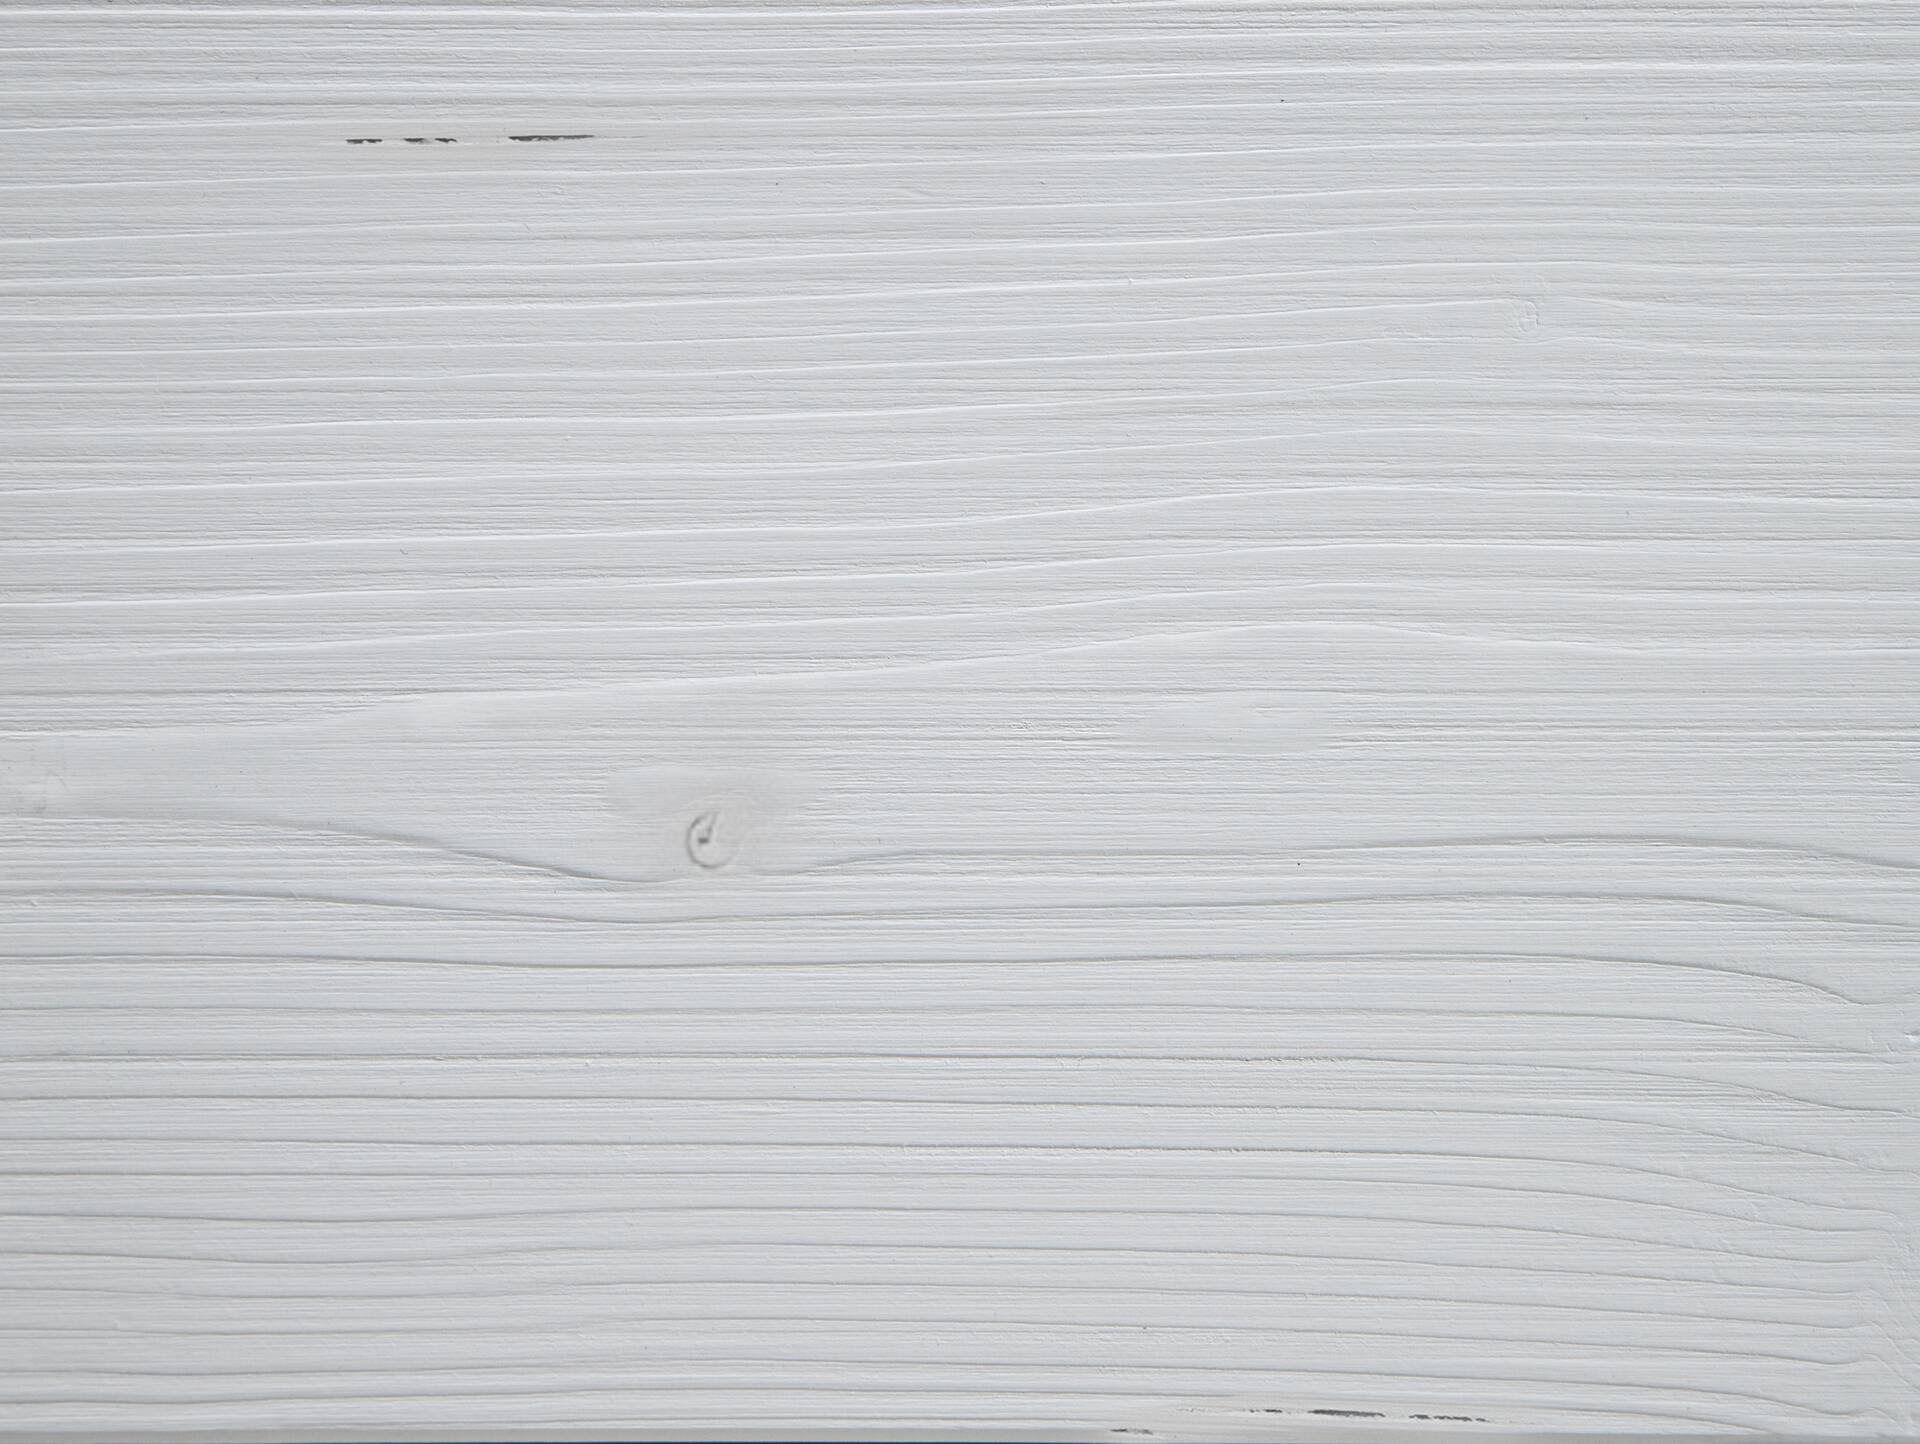 LUKY Kufenbett mit Polsterkopfteil, Material Massivholz, Fichte massiv, Kufen schwarz 90 x 220 cm | weiss | Stoff Braun